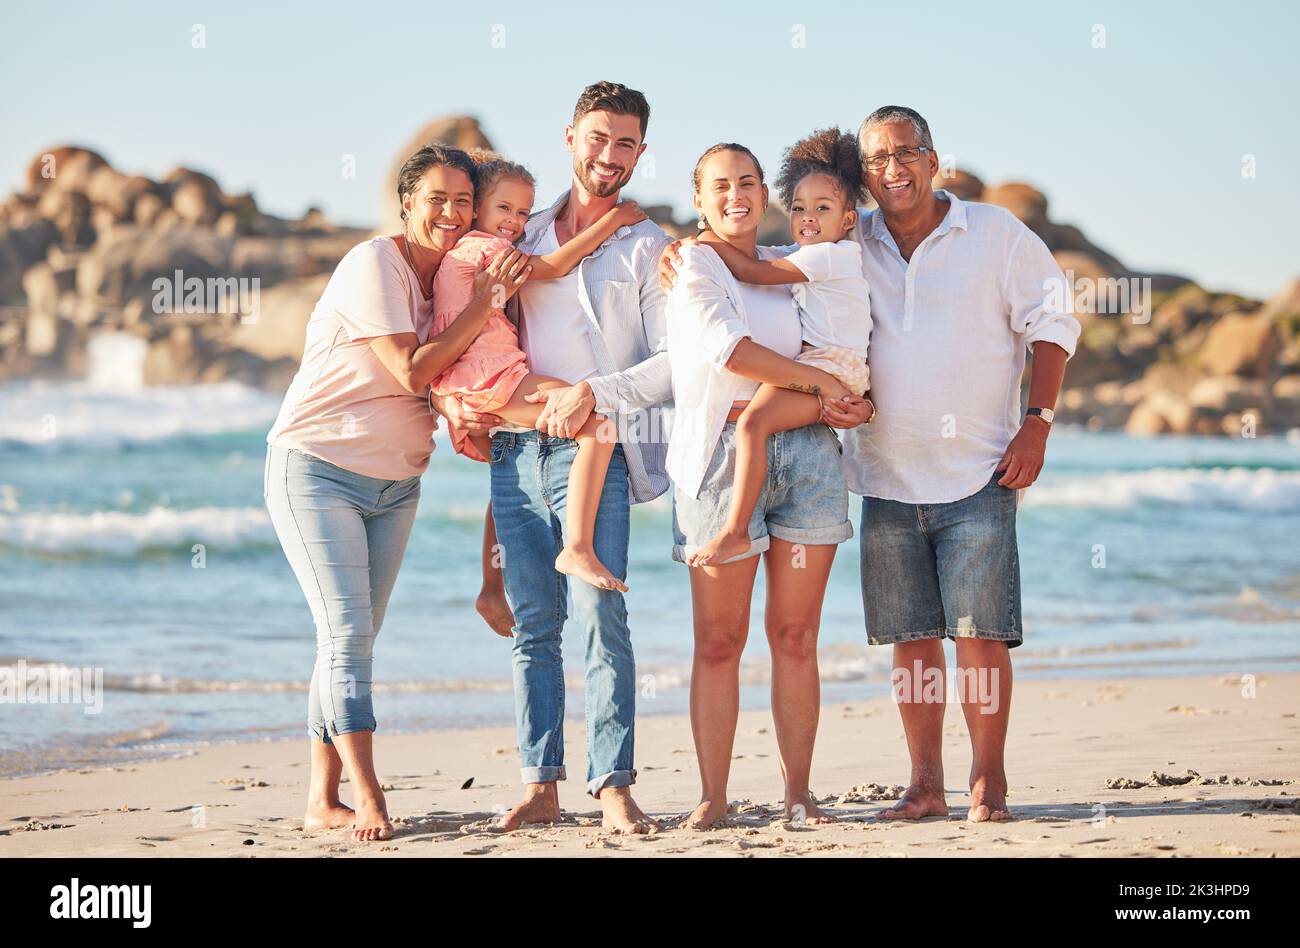 Des vacances d'été en famille, en portrait et à la plage, avec des gens heureux qui se greffent sur l'océan. Liberté, amour et voyage en mer avec la famille interraciale hug Banque D'Images